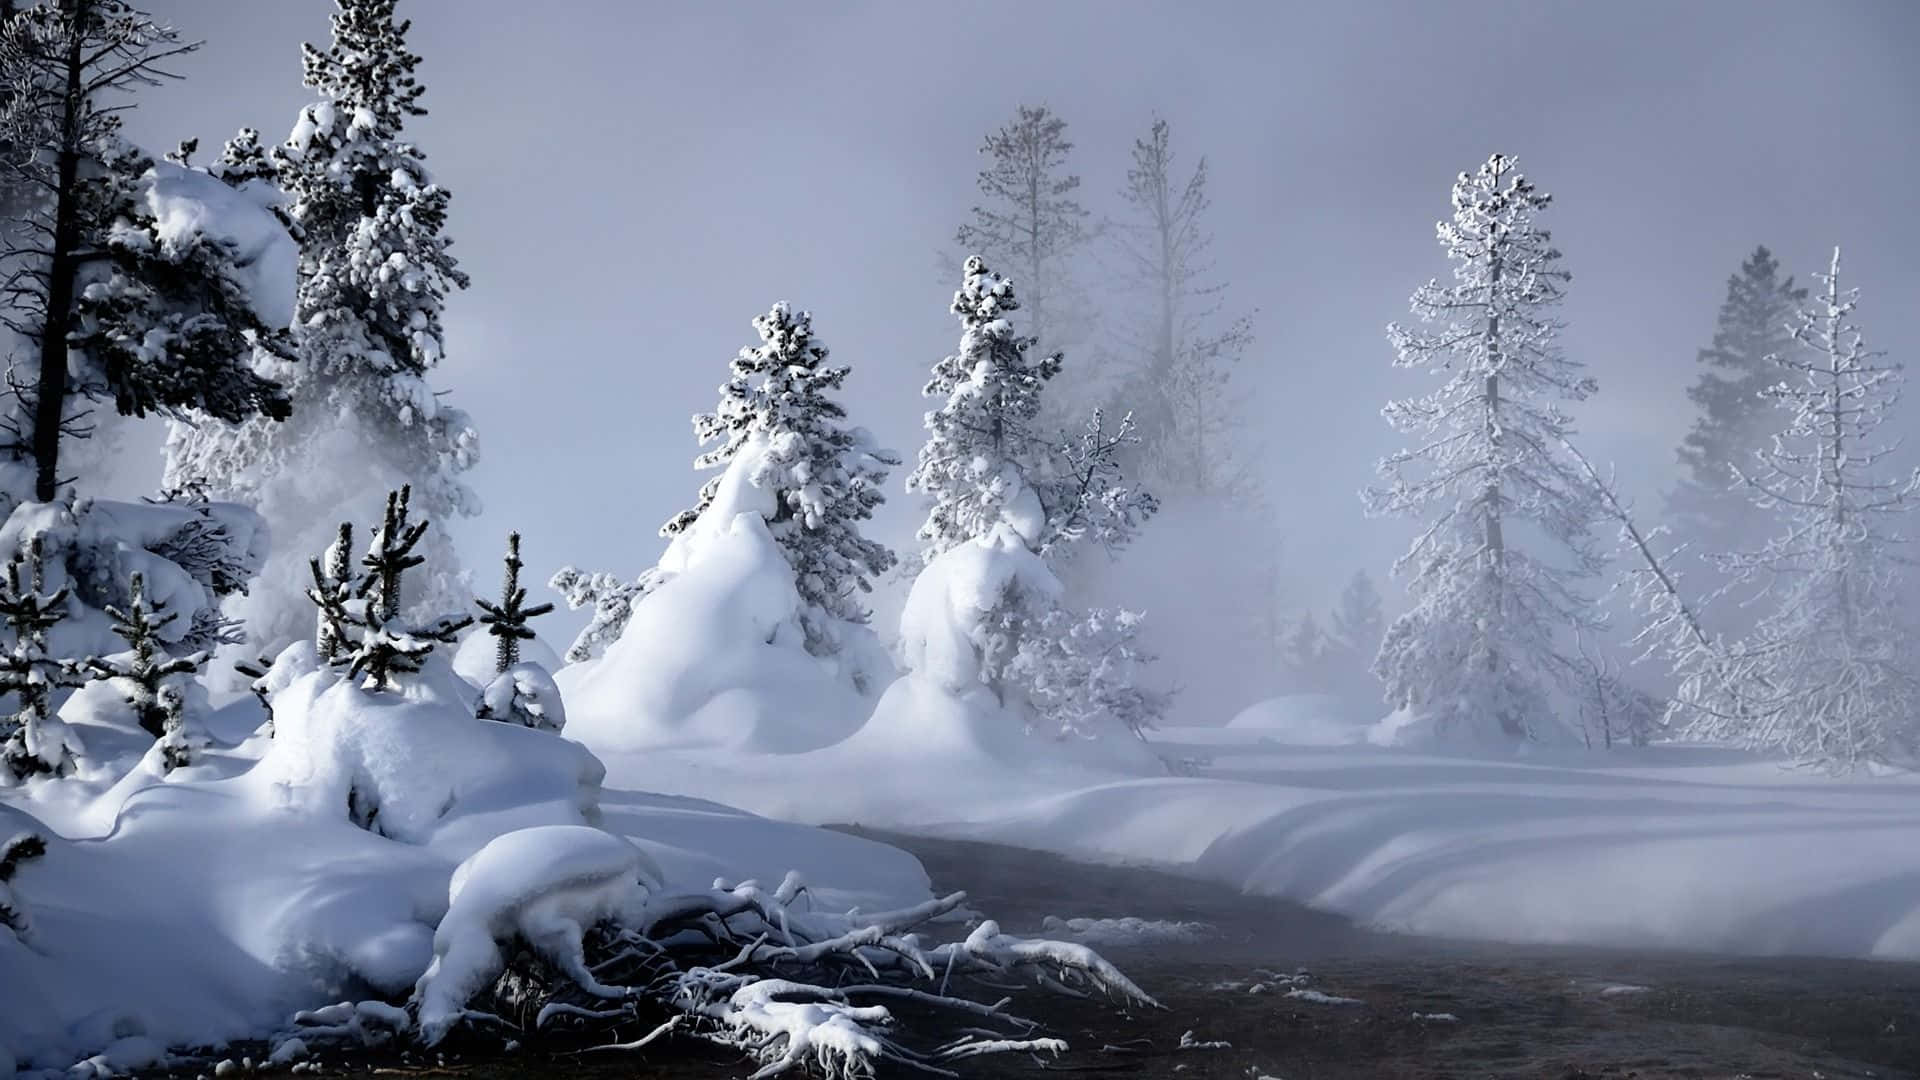 Njutav Den Vackra Vinterscenen I Snön